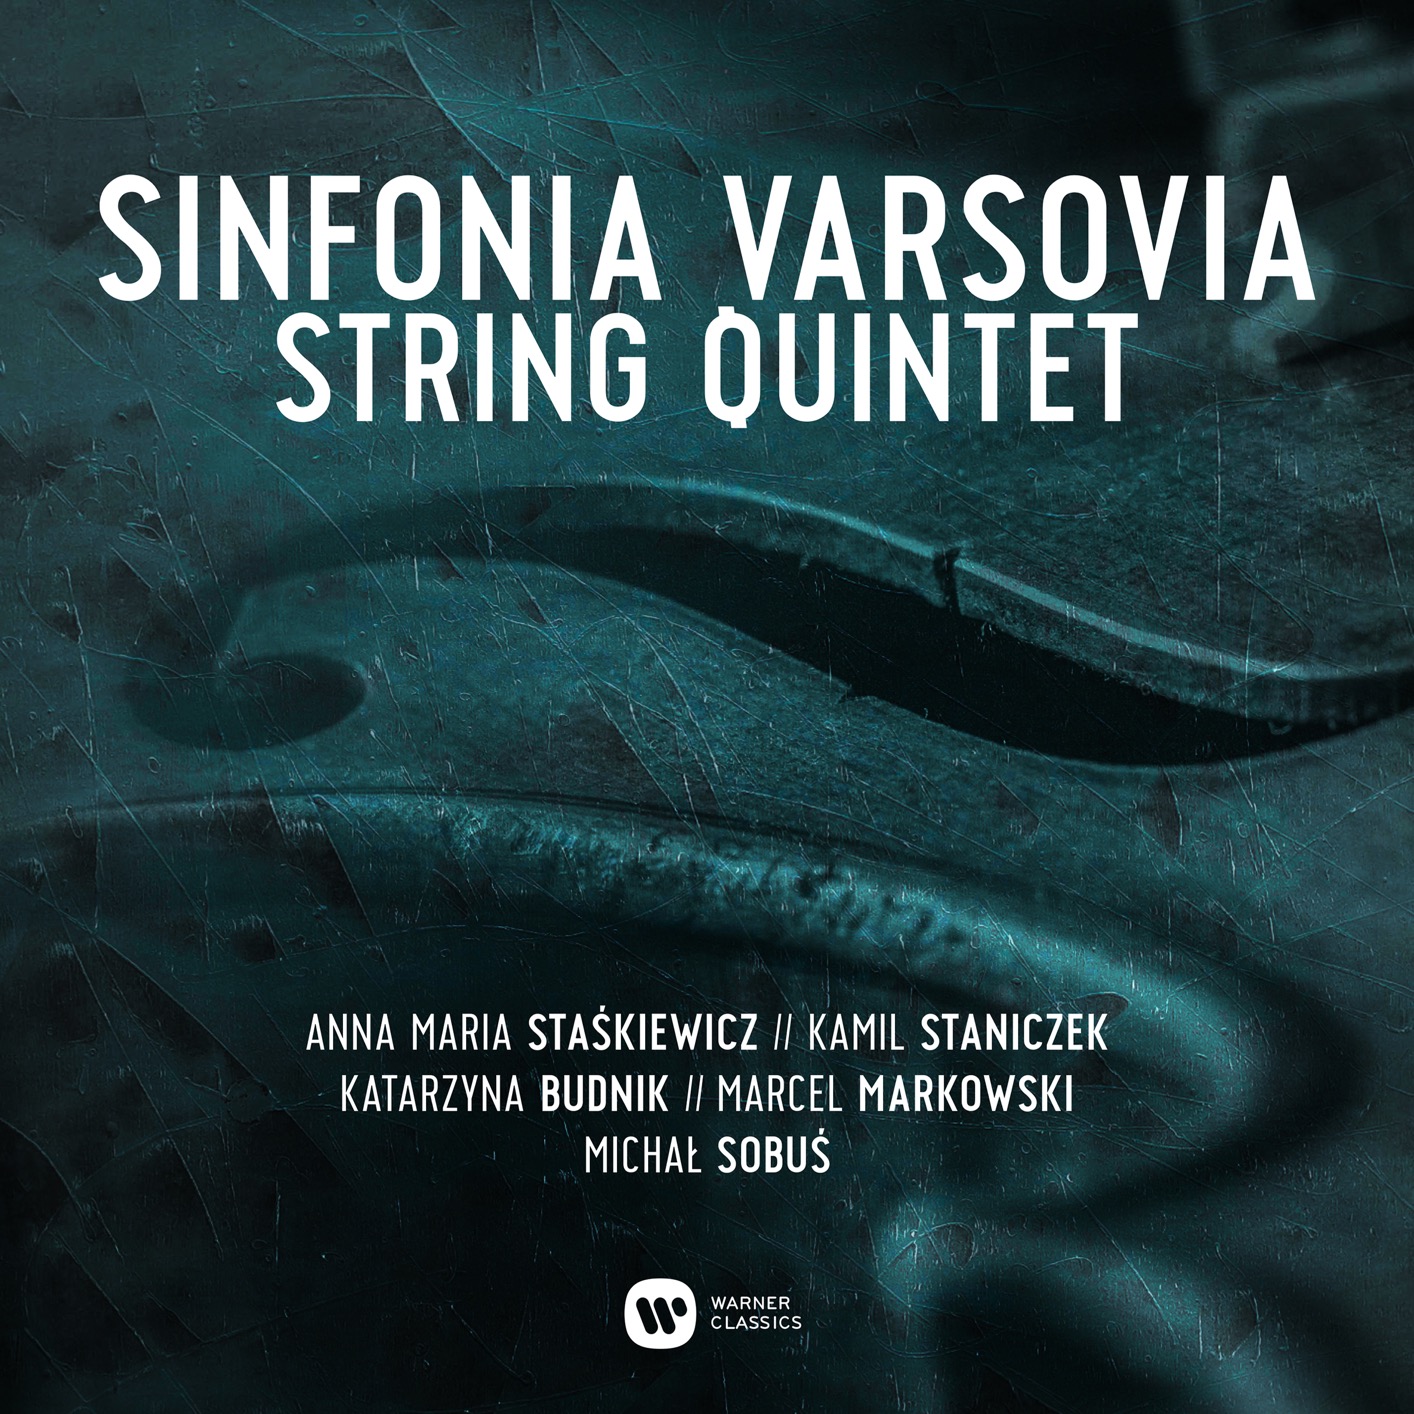 Sinfonia Varsovia String Quintet – Sinfonia Varsovia String Quintet (2019) [FLAC 24bit/44,1kHz]